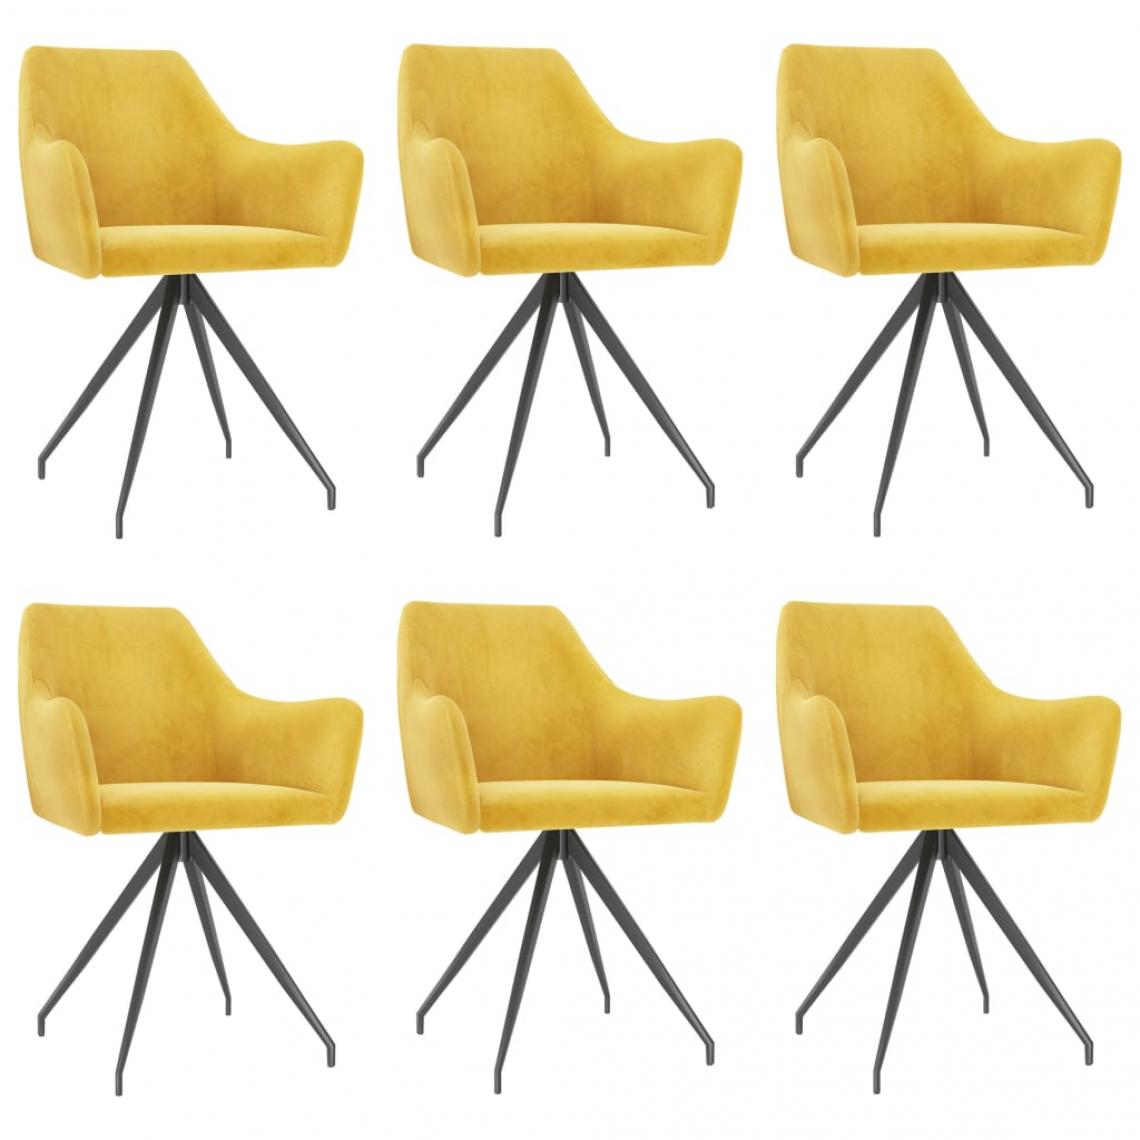 Decoshop26 - Lot de 6 chaises de salle à manger design moderne cuisine velours jaune CDS022550 - Chaises